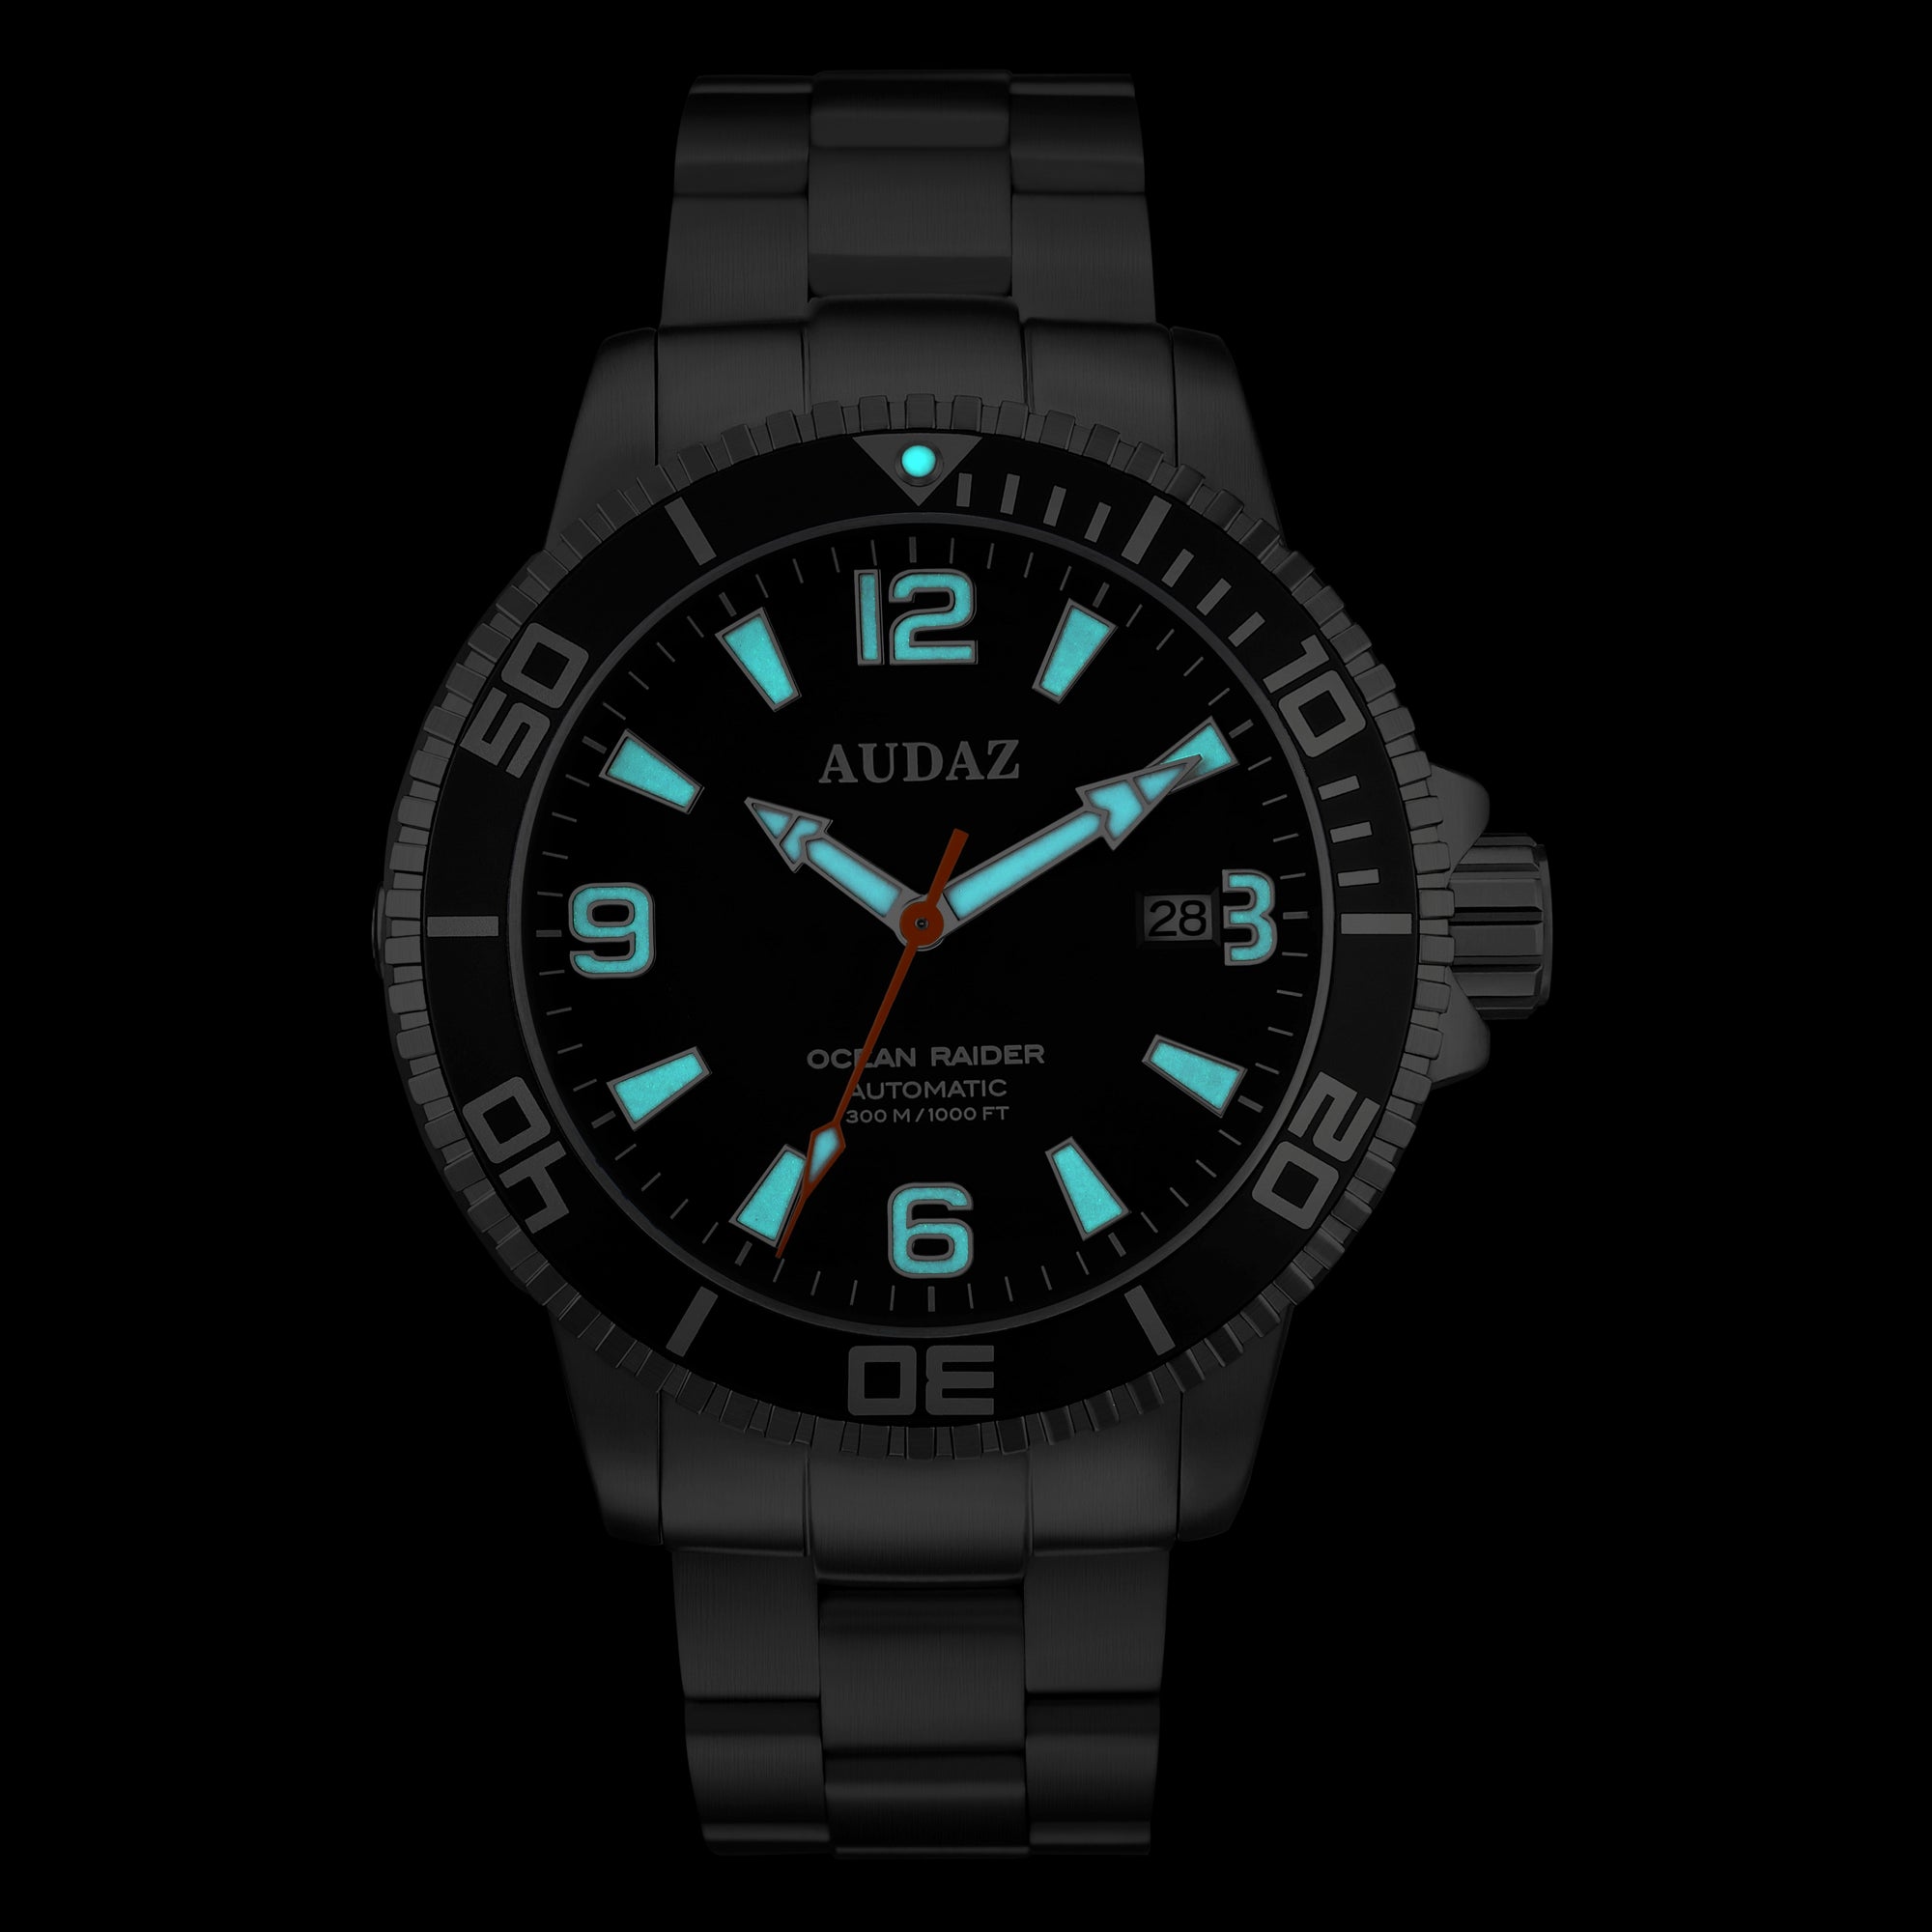 OCEAN RAIDER Watches ADZ-2060-07